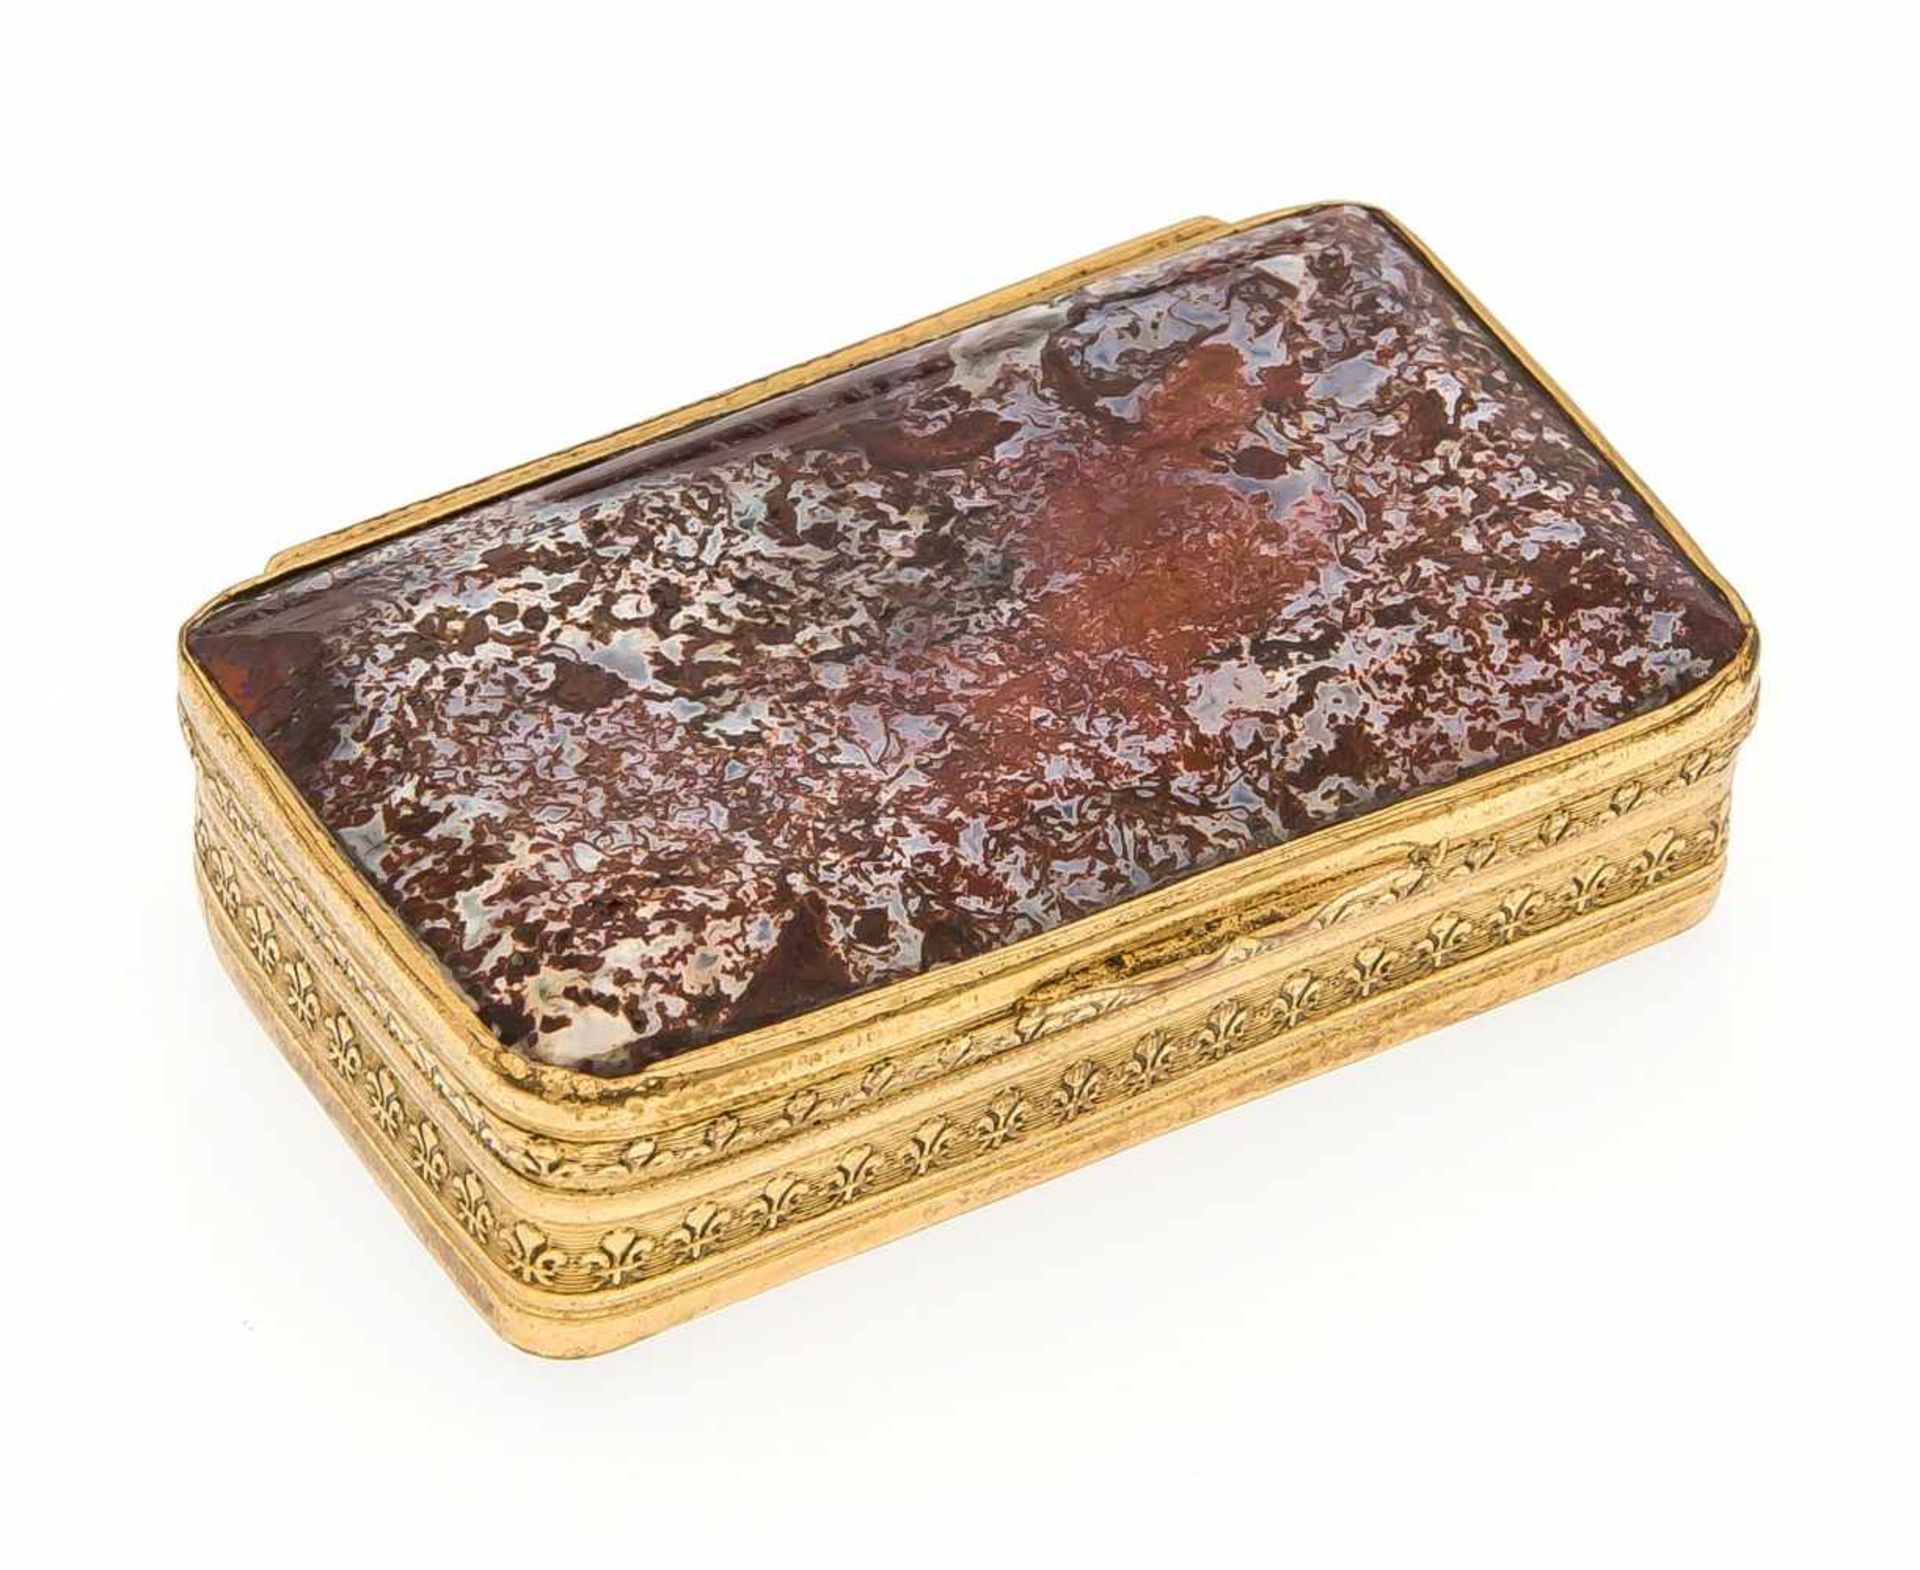 Tabatiére, Frankreich Ende 18. Jh. Kupfer vergoldet, rechteckige Form, Boden undscharnierter